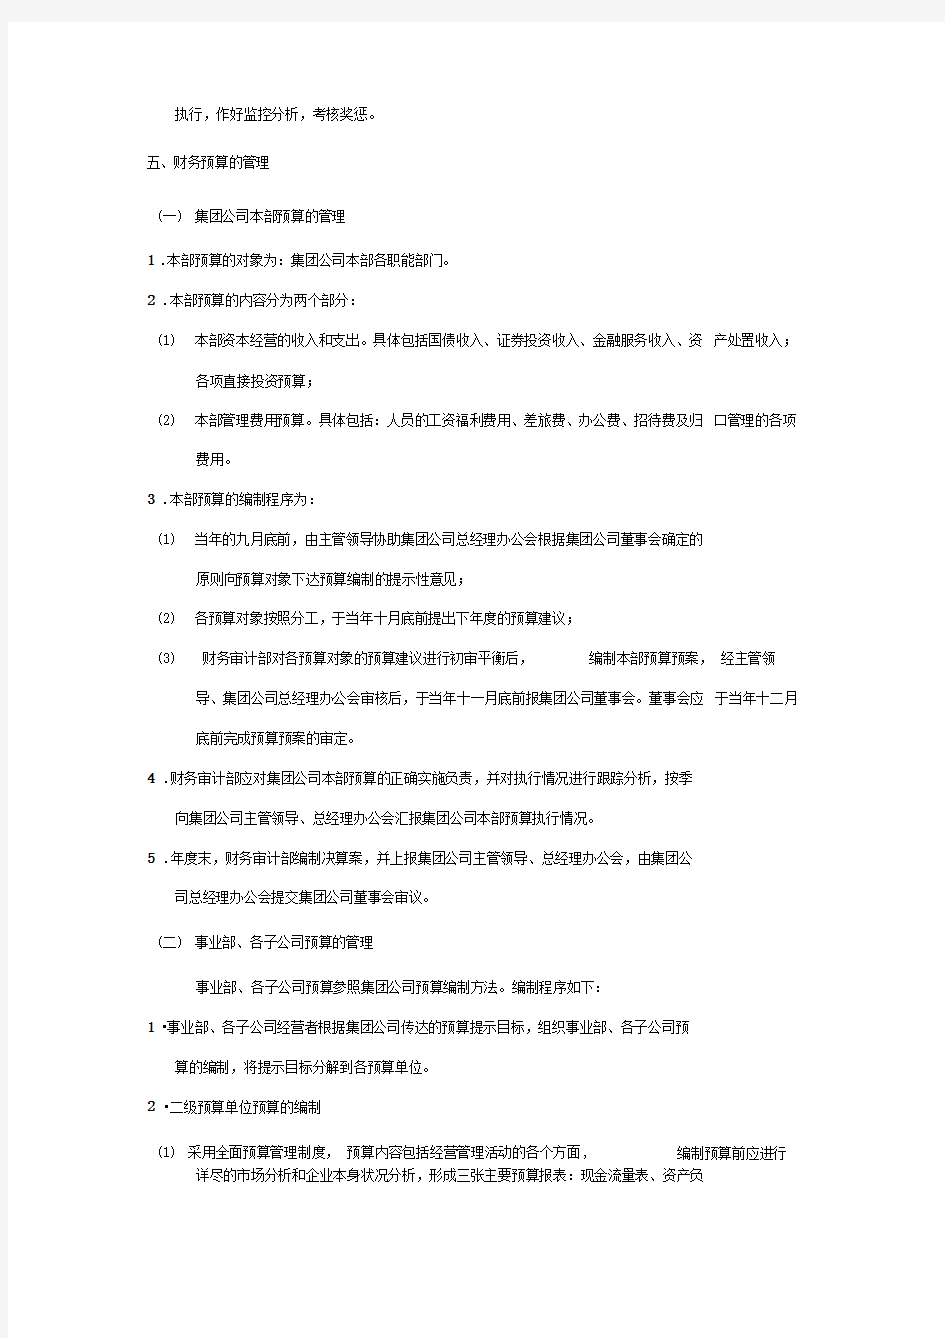 黑龙江辰能集团财务预算管理办法